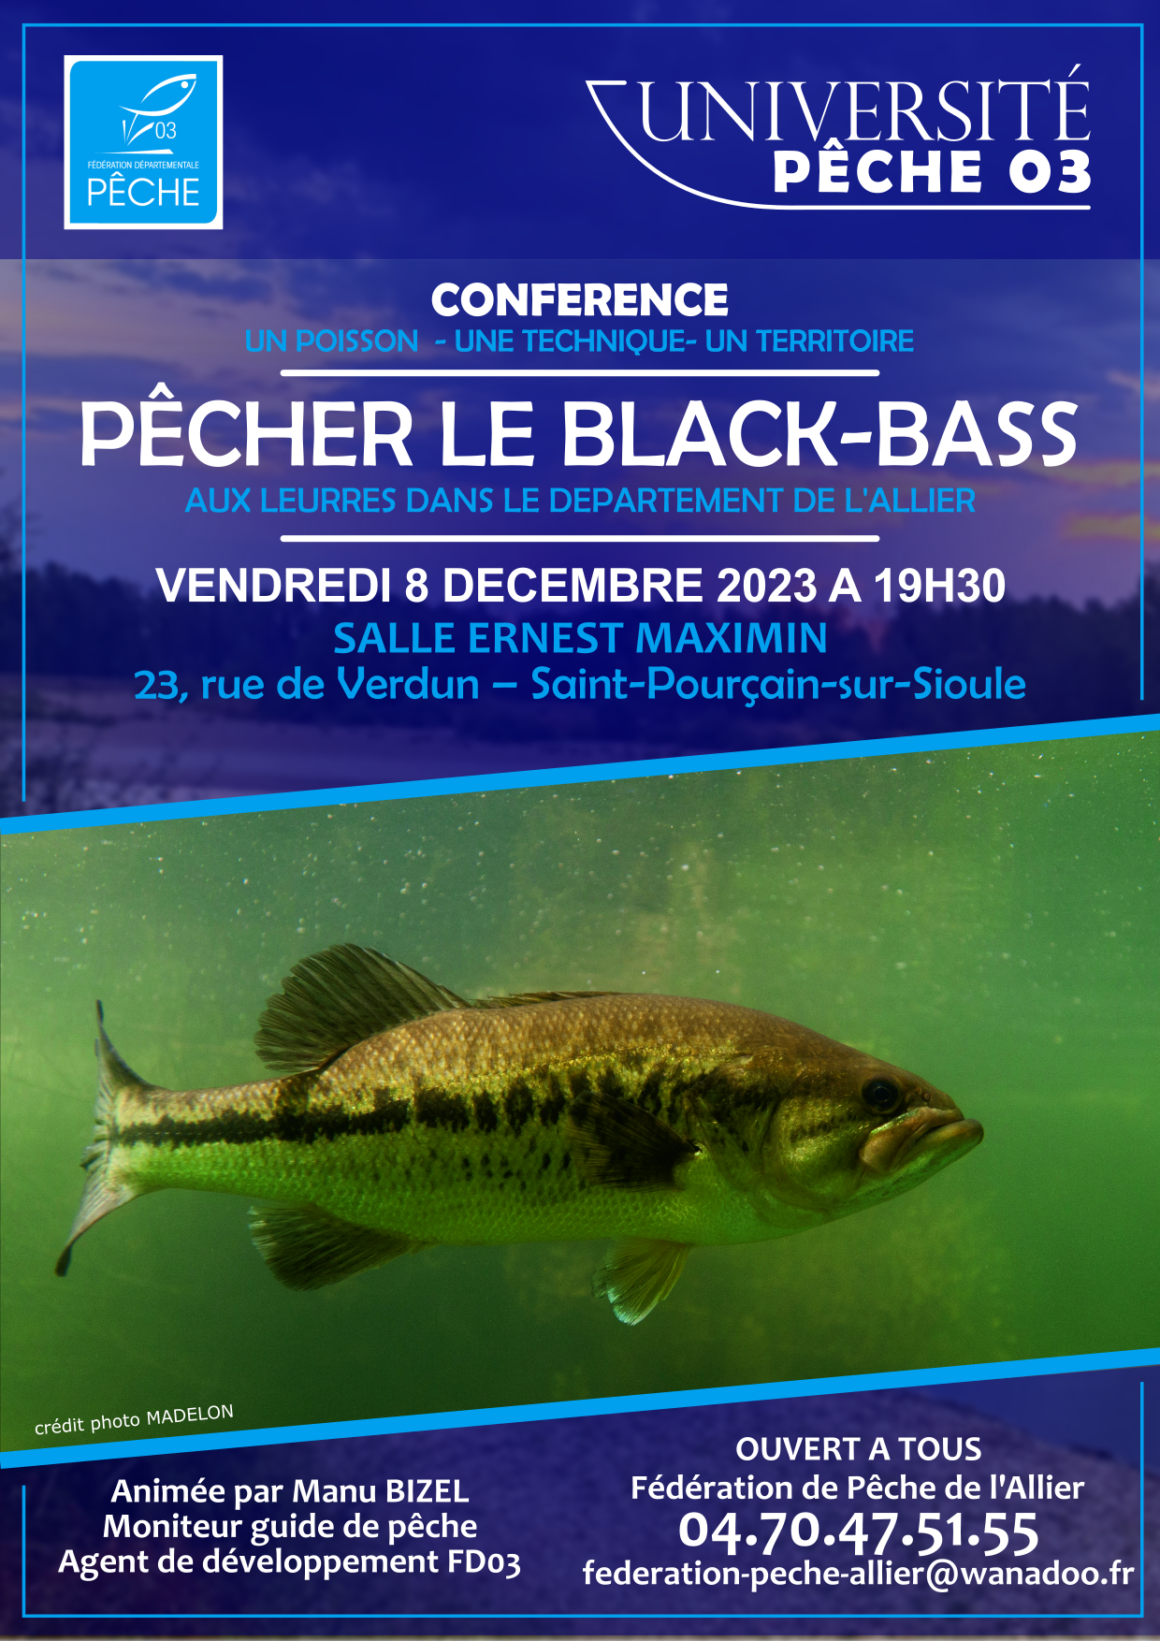 Université Pêche 03 – Conférence #2 – Pêcher le black-bass aux leurres